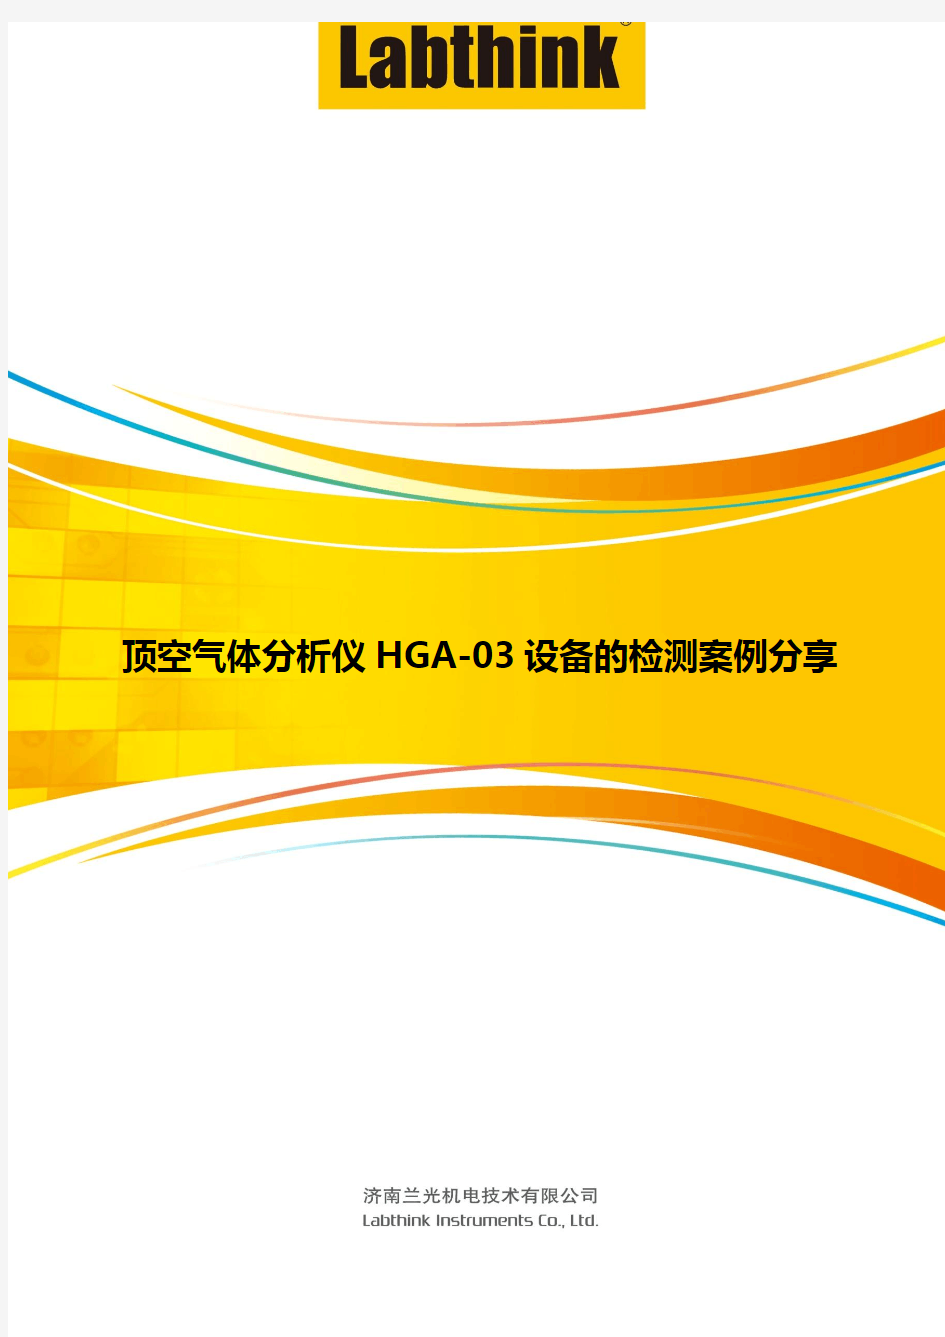 顶空气体分析仪HGA-03设备的检测案例分享